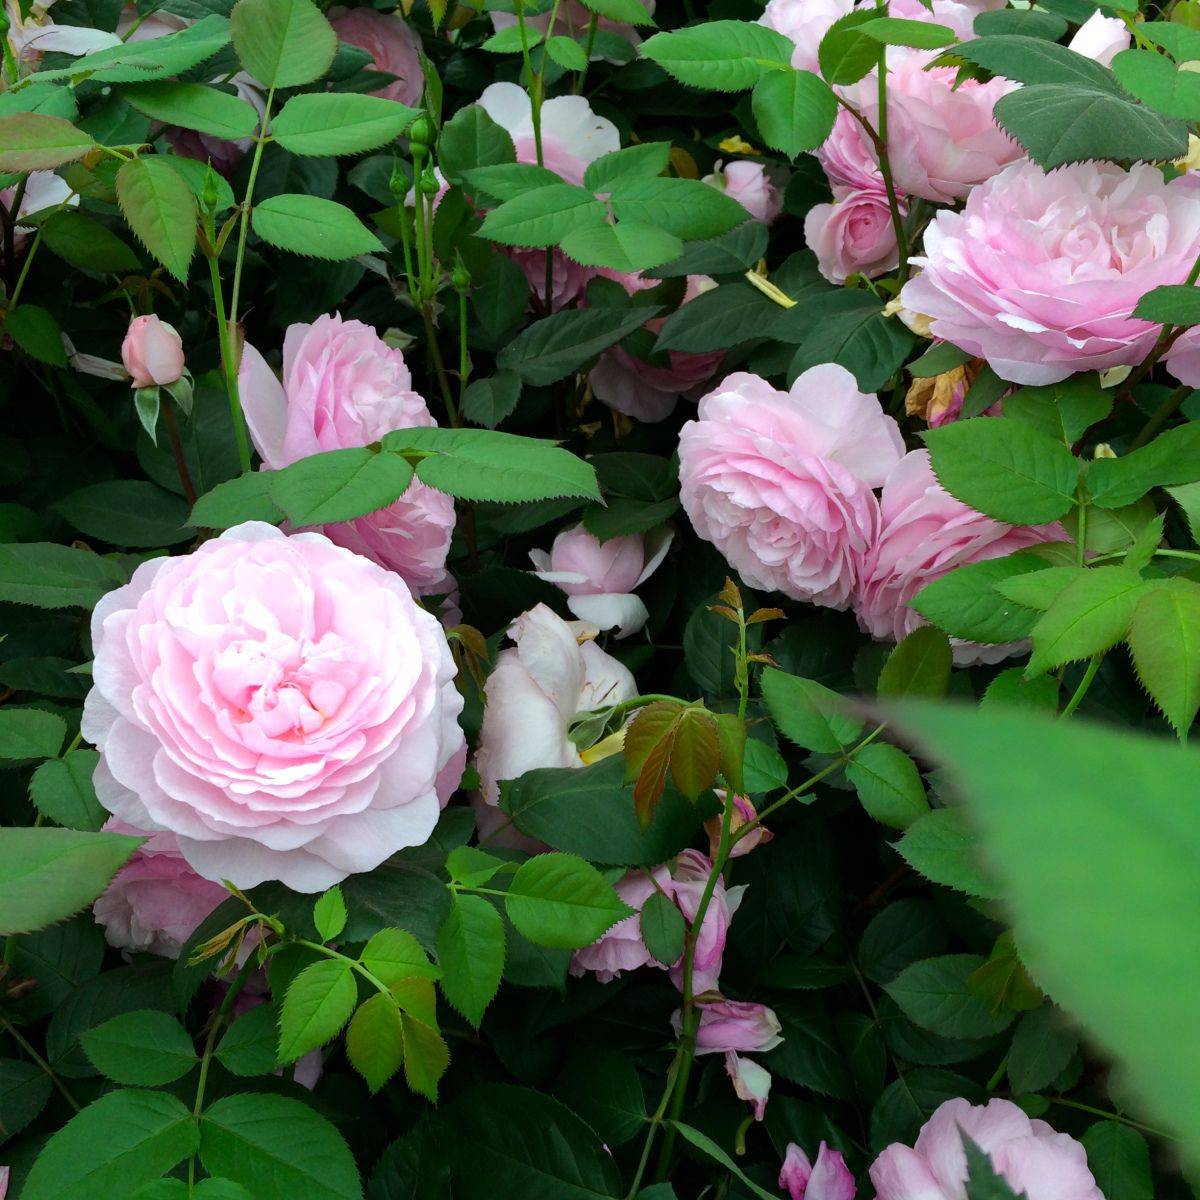 Описание розы джеймс галвей из коллекции остина- что это за сорт, как выращивать - veela